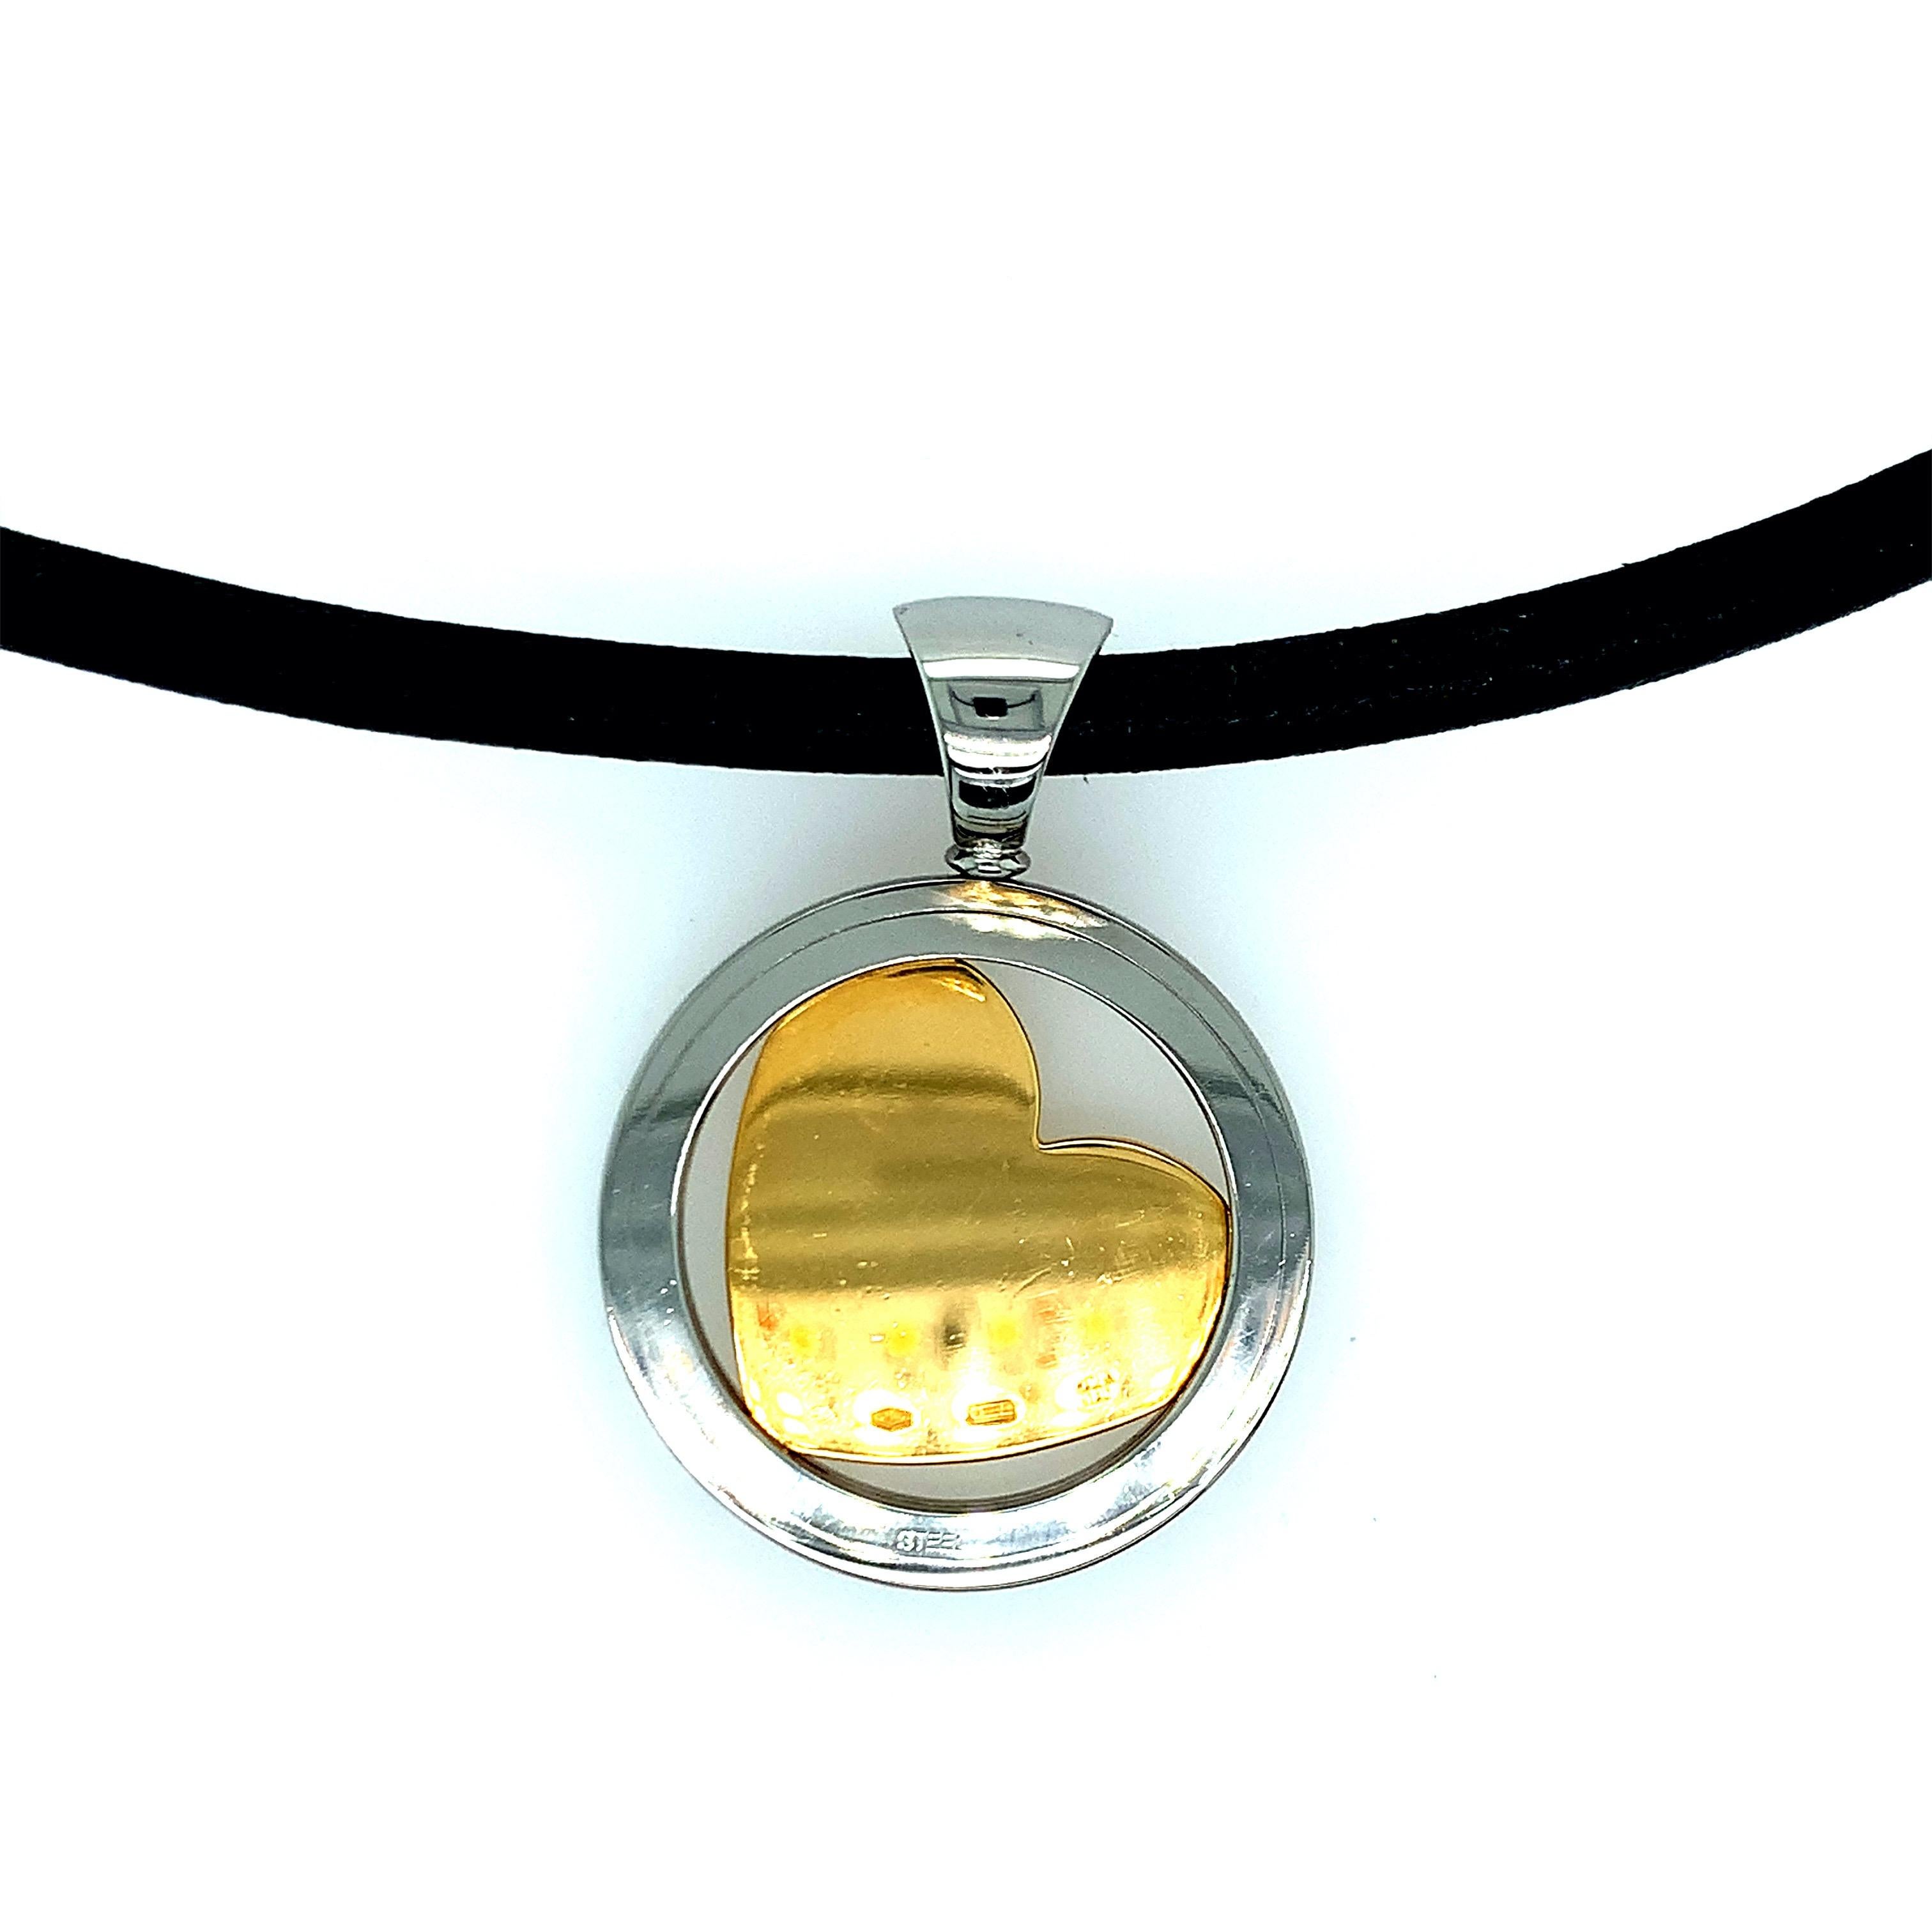 Créé par Bvlgari, ce collier présente un cœur en or à l'intérieur d'un acier circulaire. Des diamants en forme de cœur se trouvent à l'intérieur du cœur en or. Poids total : 29.4 grammes. Longueur du collier : 17 pouces. Dimensions du pendentif :